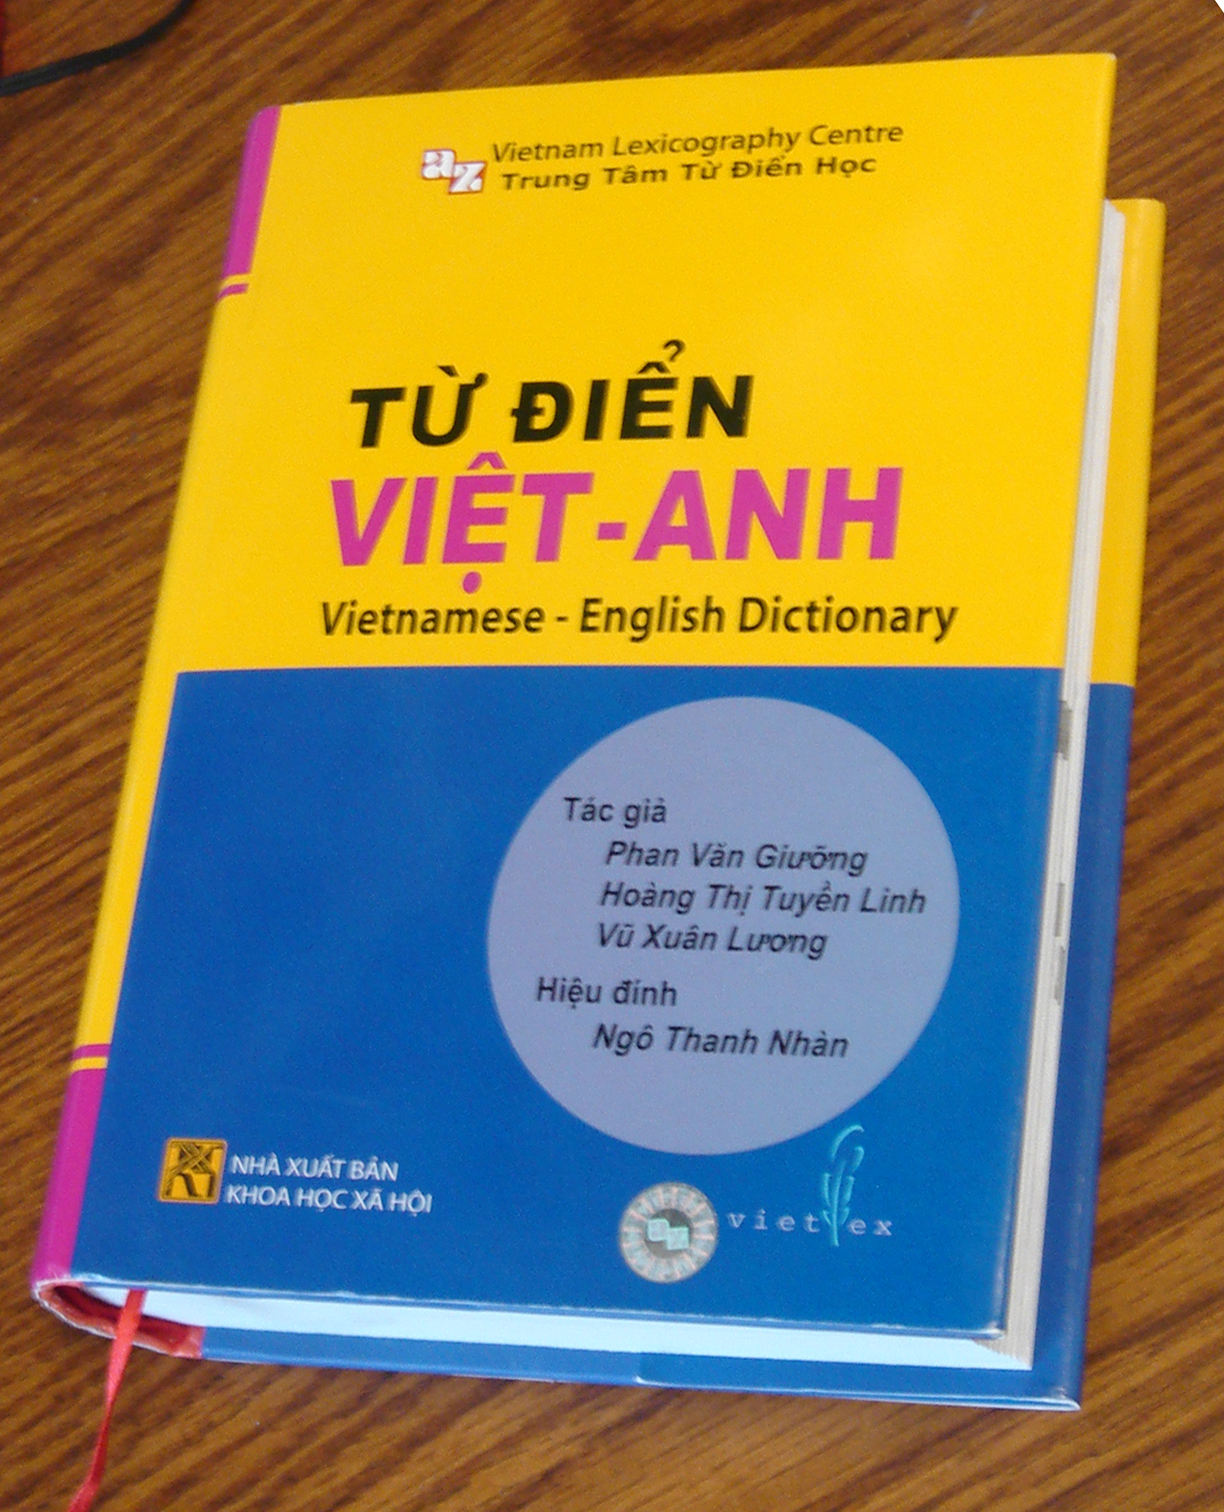 Vietlex Vietnamese English Dictionary 2012 Cover